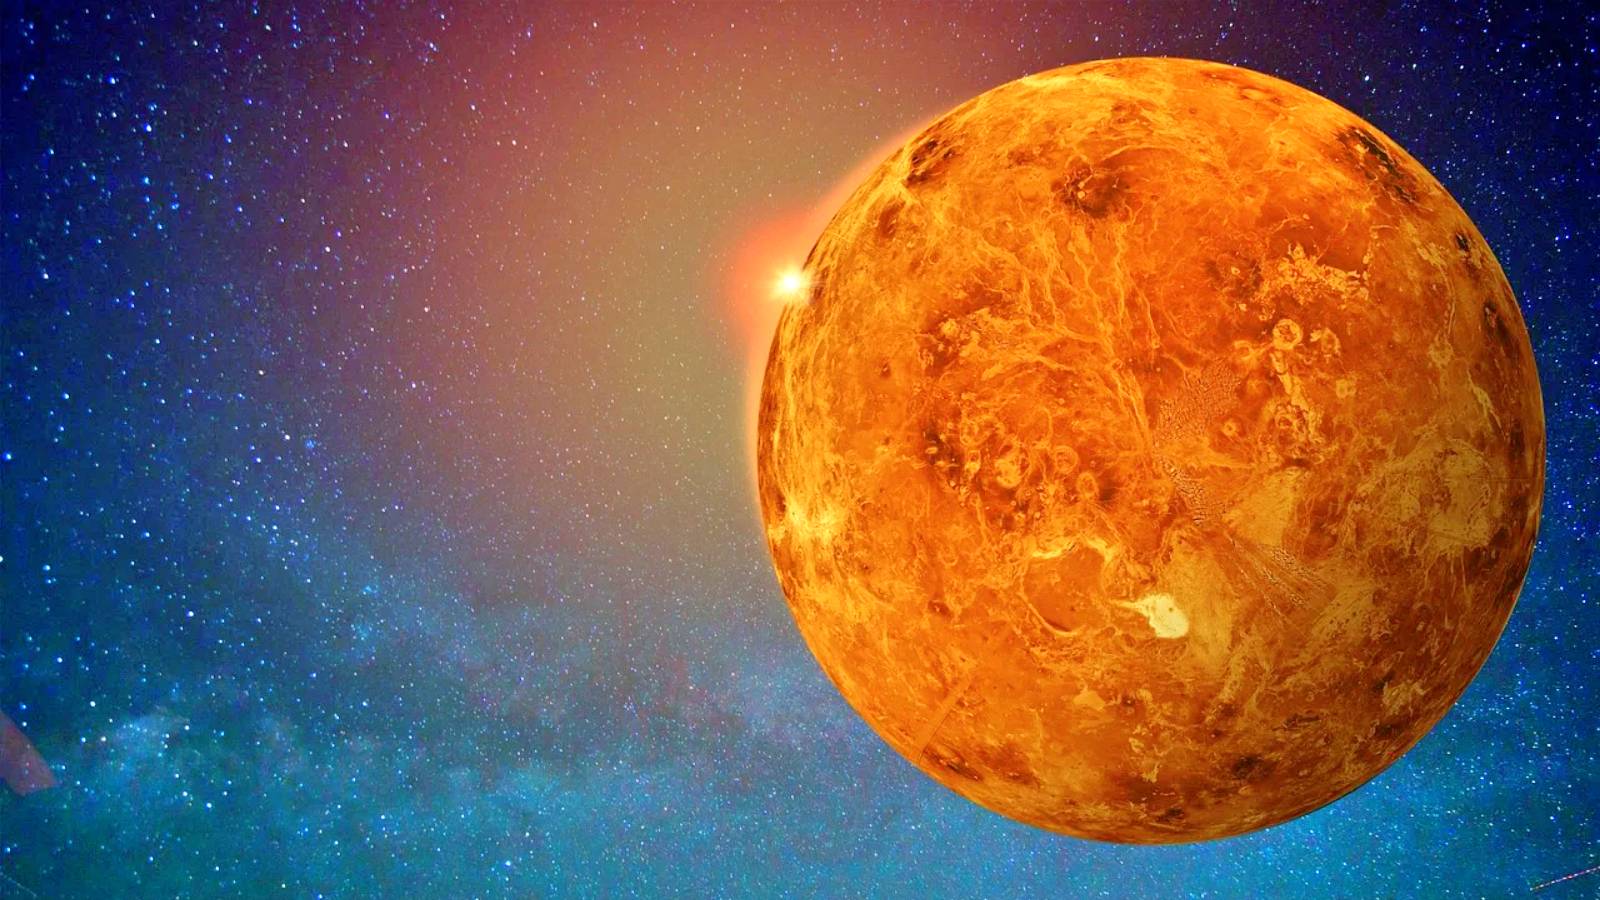 Planeetta Venus Ihmistieteen ilmoitukset hämmästyttivät koko maailmaa